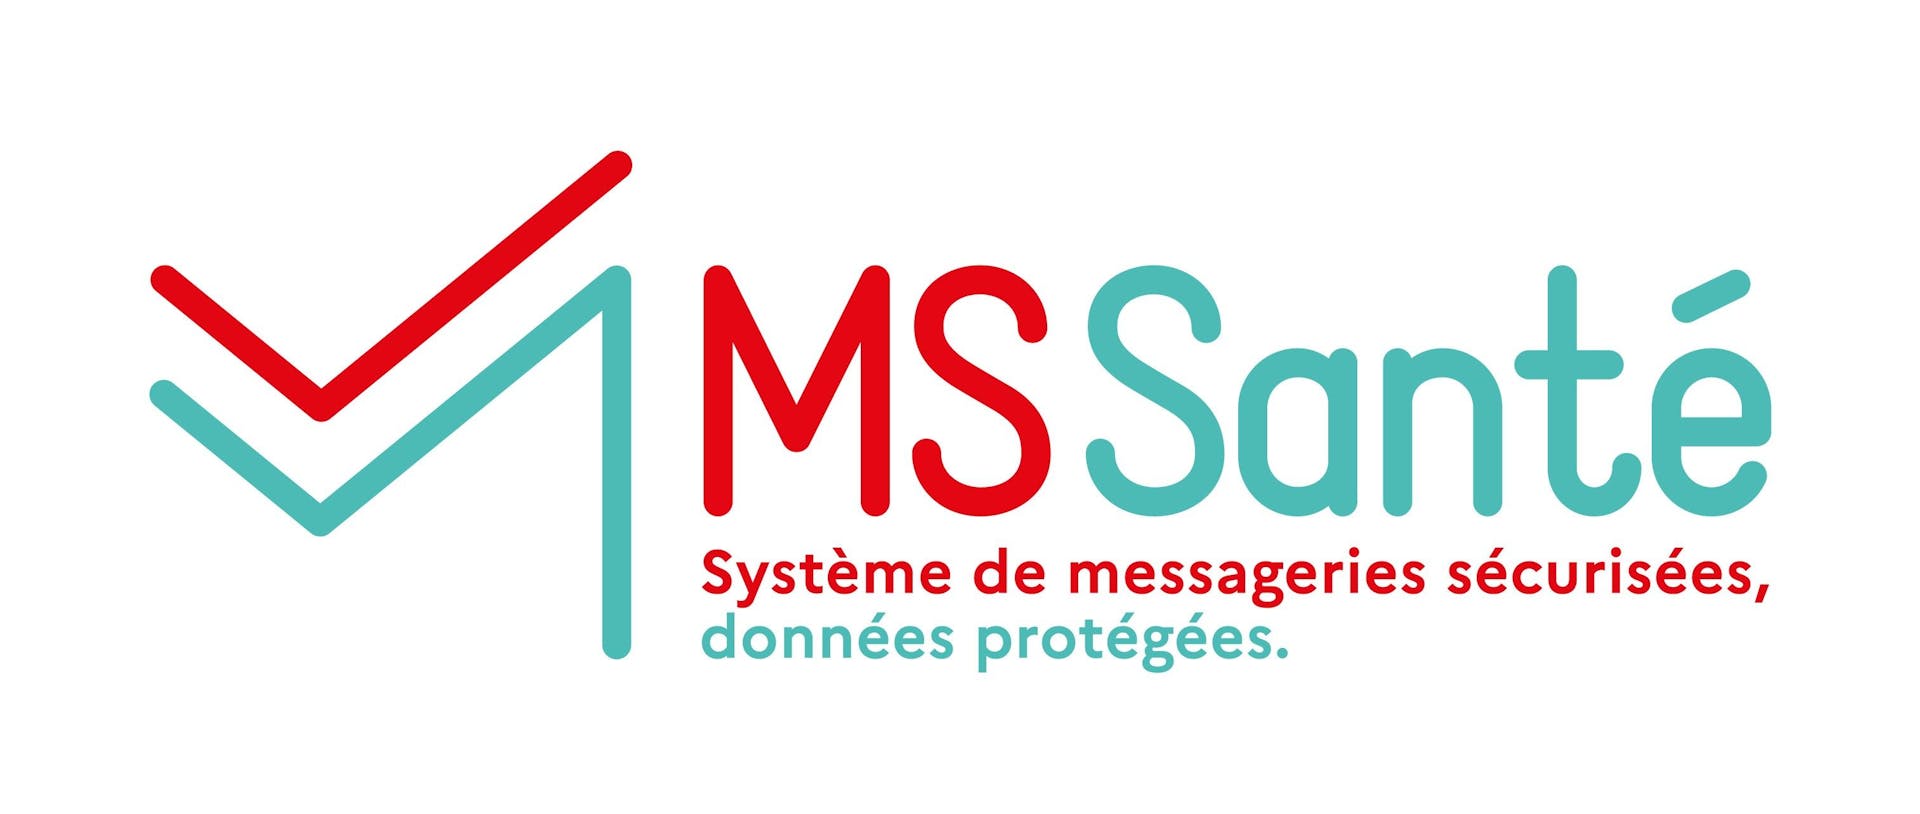 Représentation du logo MS Santé, système de messageries sécurisées et des données protégées.